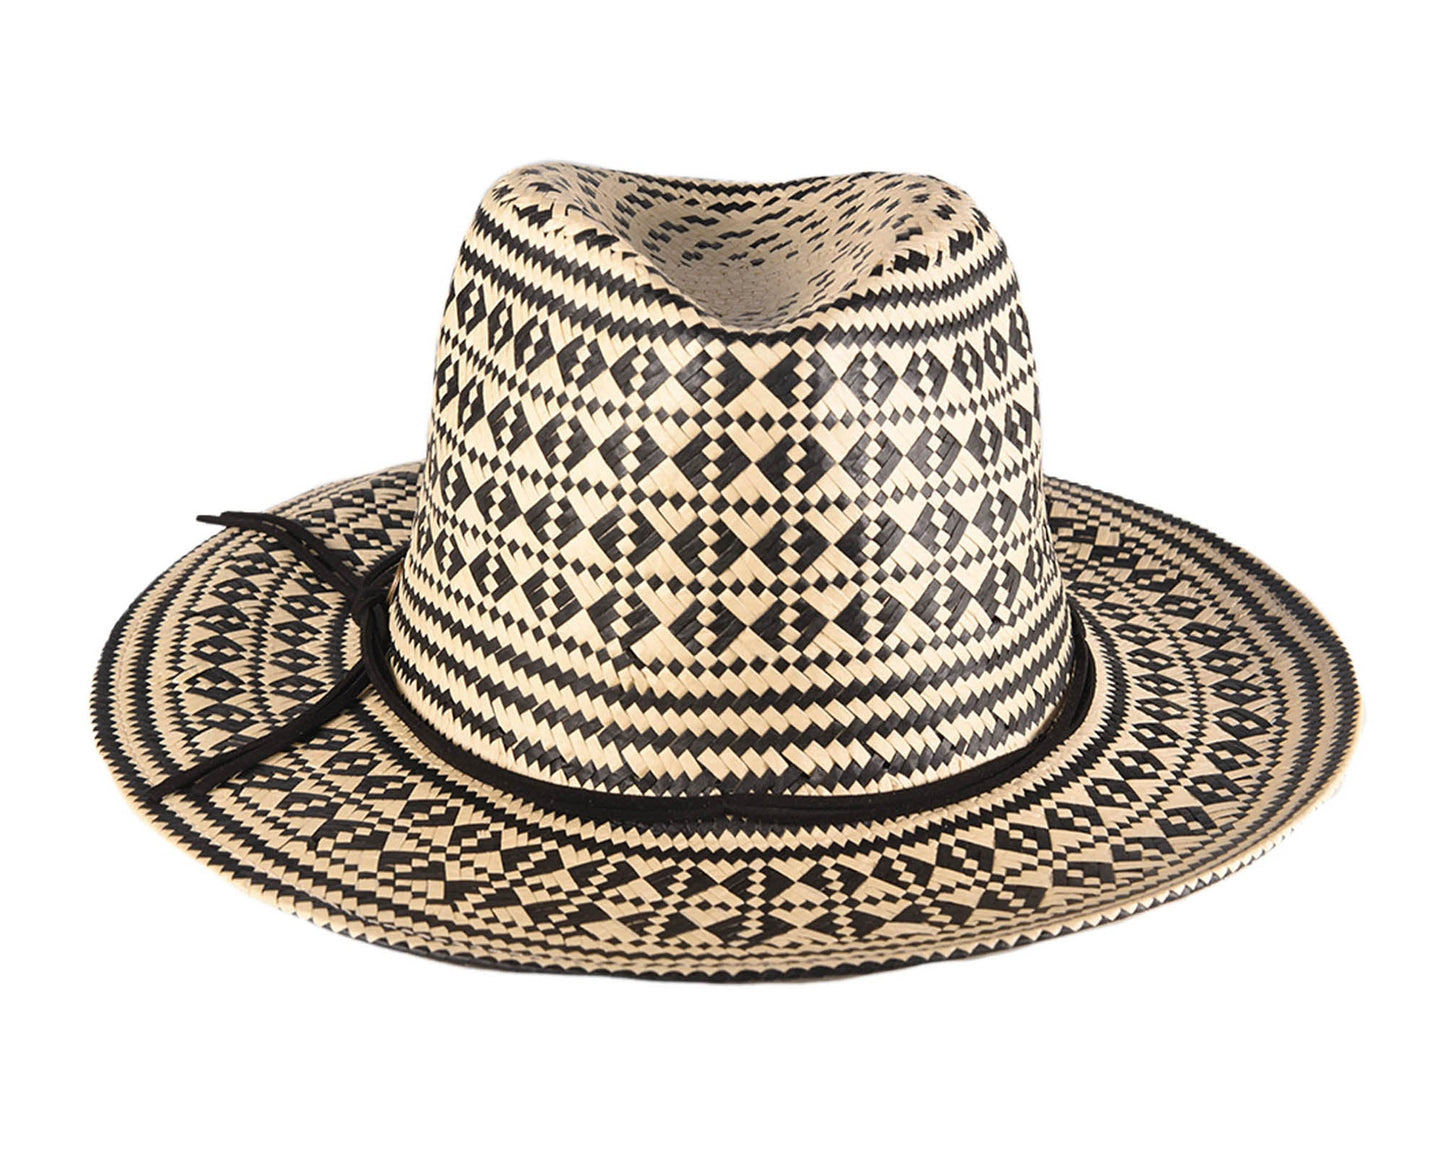 The Komorebi Series 2. Ni Straw Hat